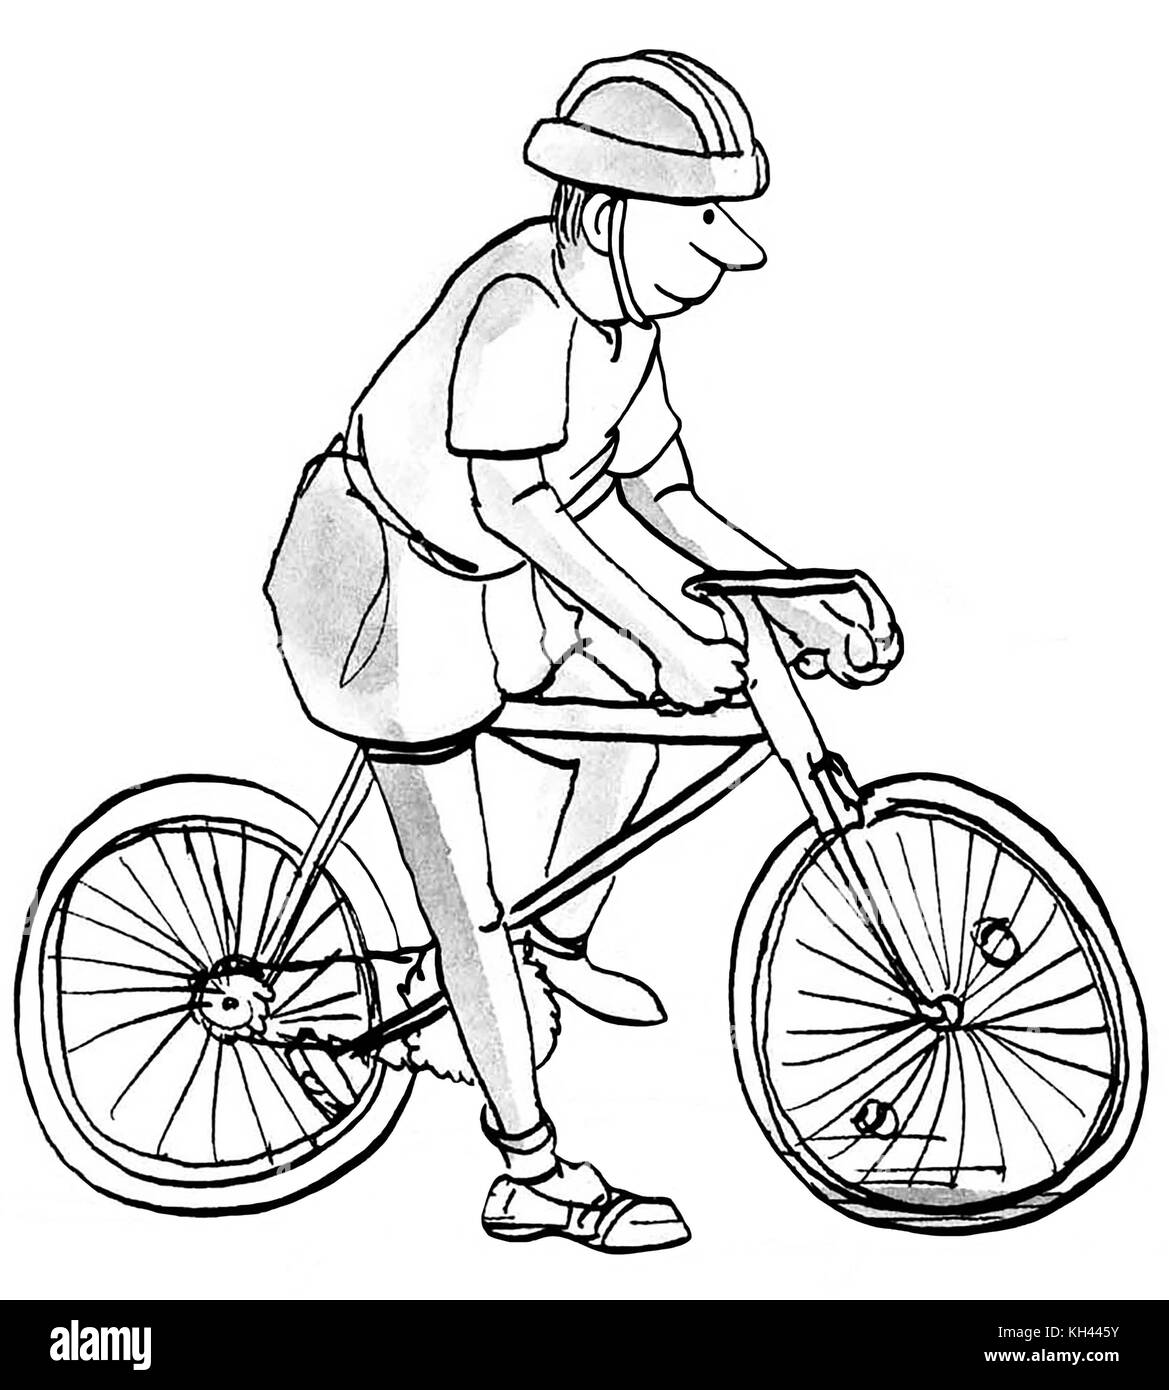 Ilustración de dibujos animados de baby boomer man preparándose para andar  en bicicleta Fotografía de stock - Alamy